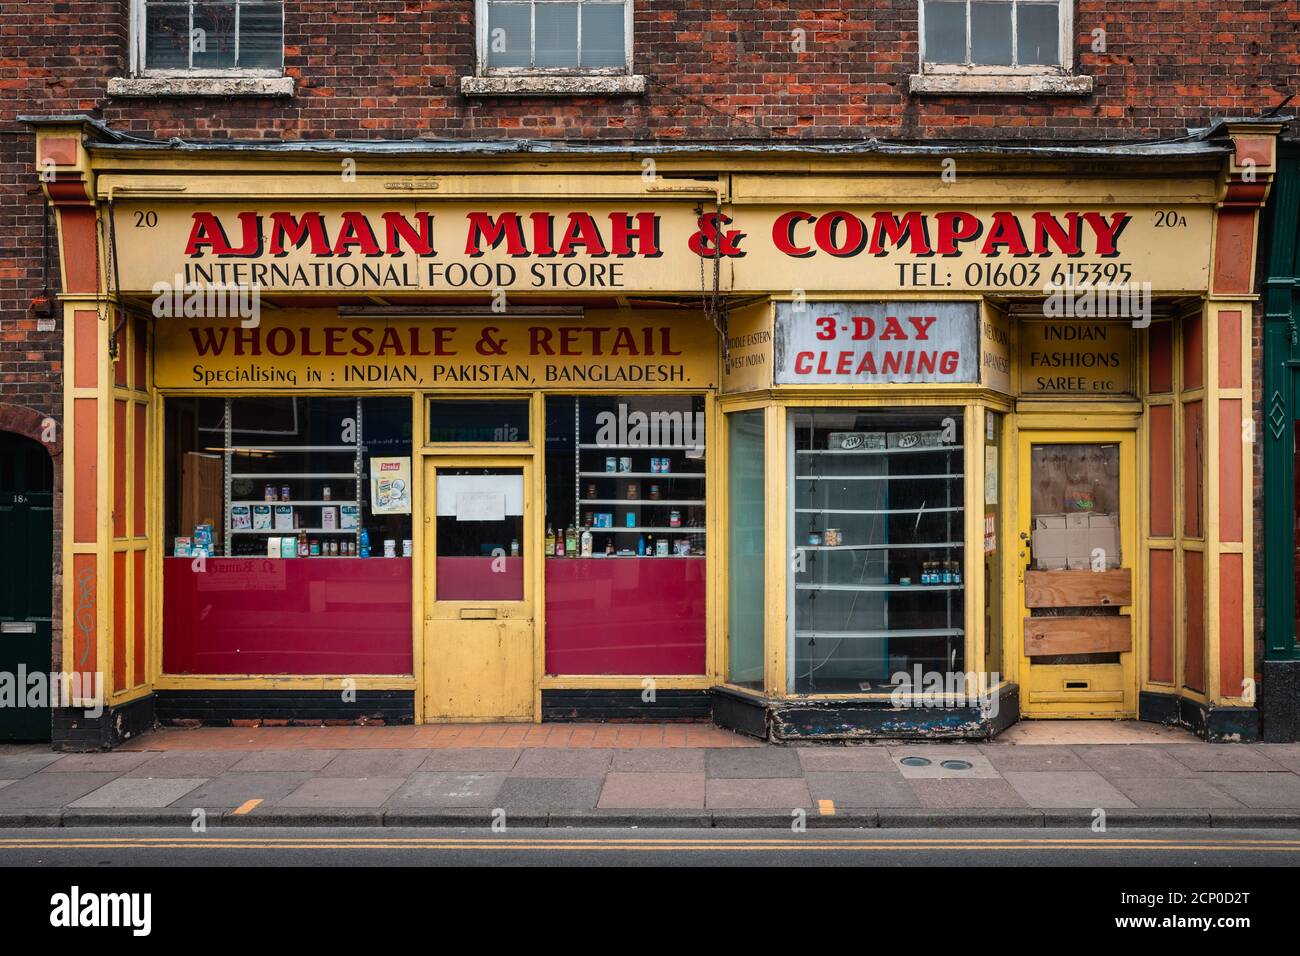 Ajman Miah & Company shop en Norwich. La tienda de comida internacional vintage tienda. Foto de stock